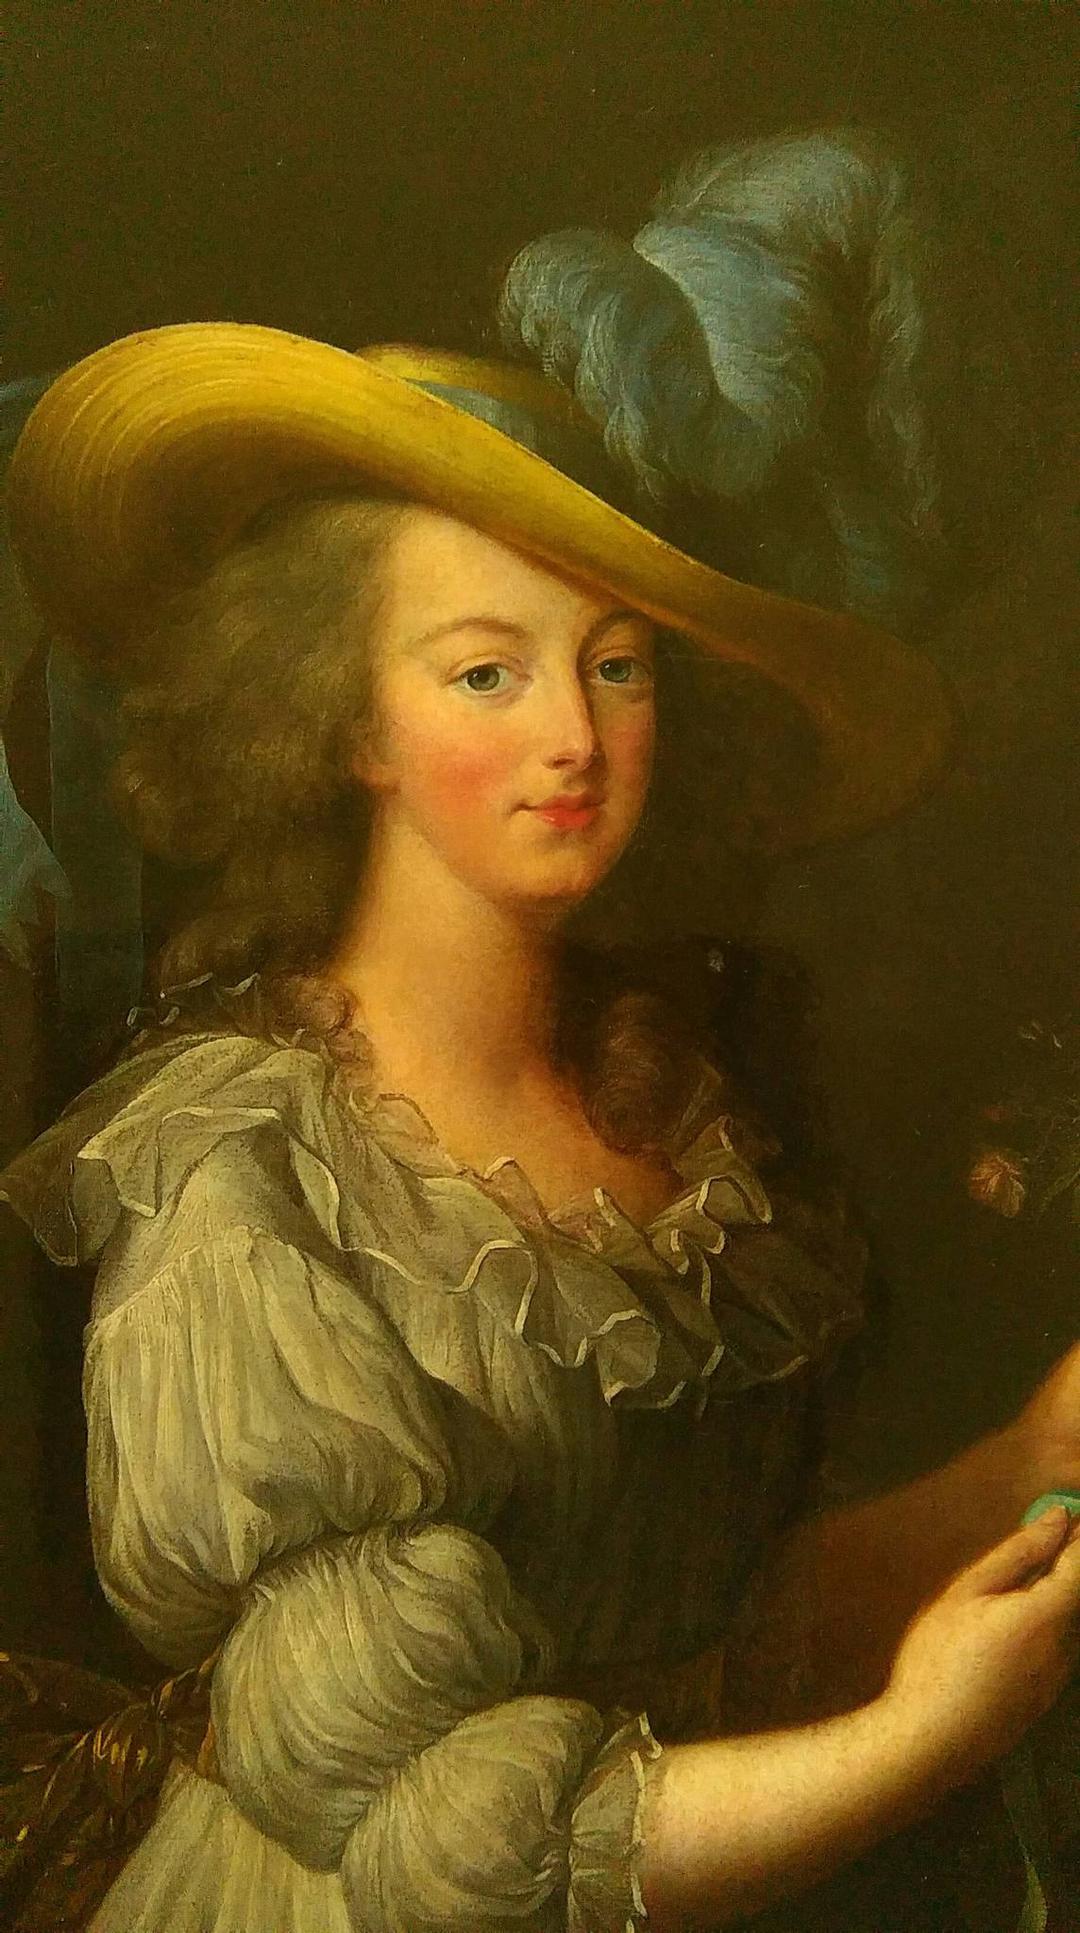 "Une femme parmi les portraitistes, Madame Vigée Lebrun"